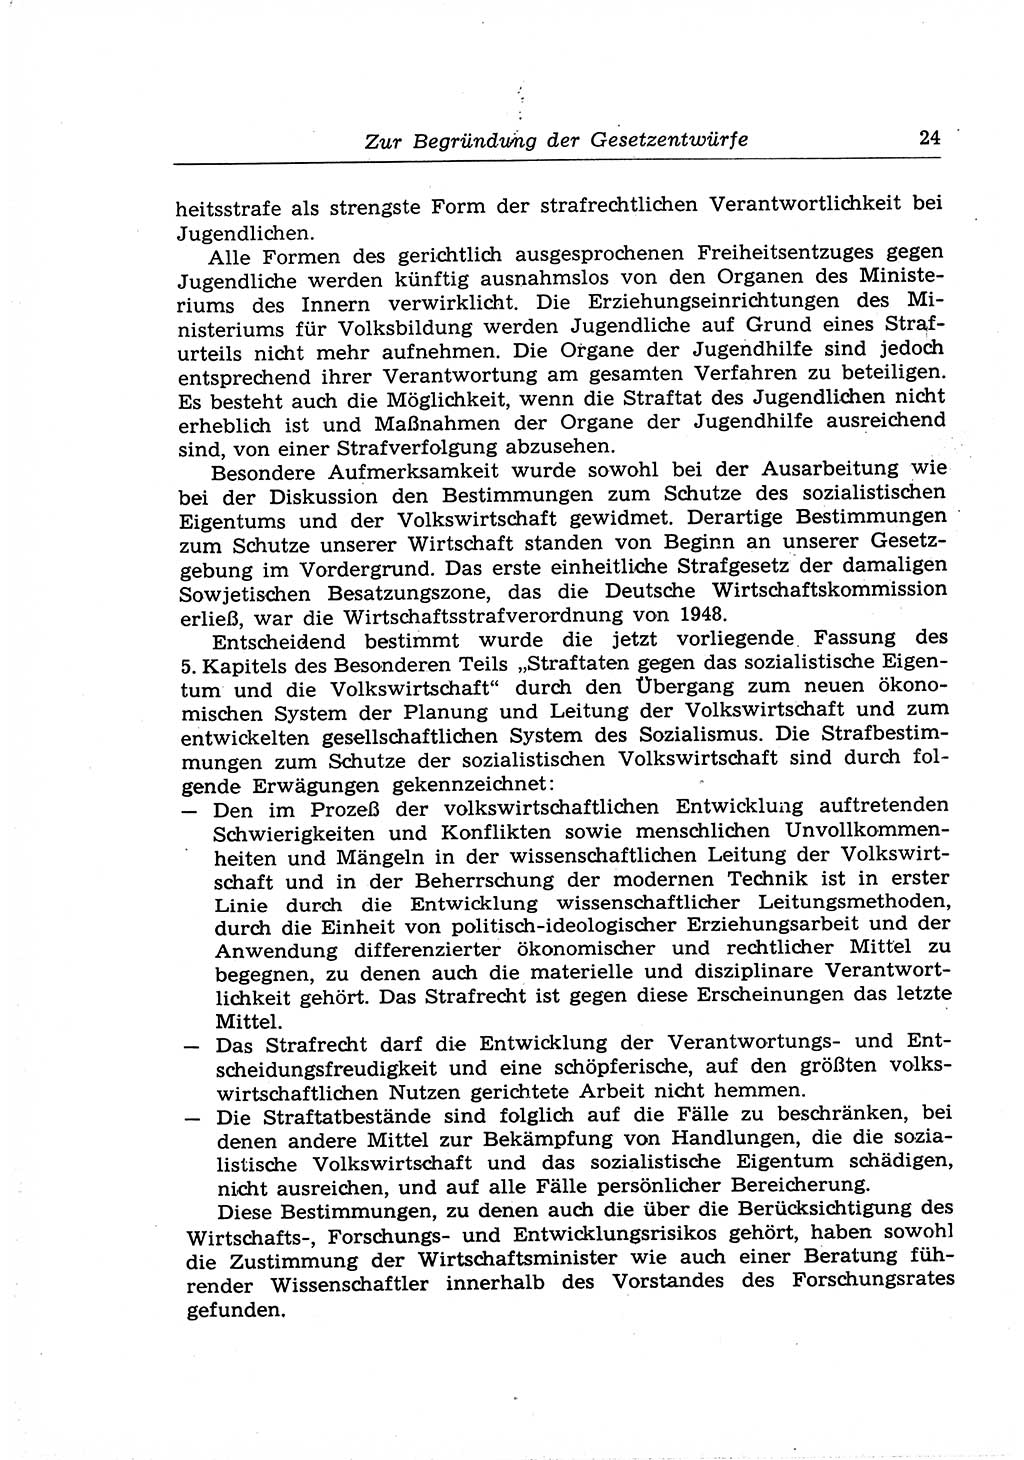 Strafrecht der Deutschen Demokratischen Republik (DDR), Lehrkommentar zum Strafgesetzbuch (StGB), Allgemeiner Teil 1969, Seite 24 (Strafr. DDR Lehrkomm. StGB AT 1969, S. 24)